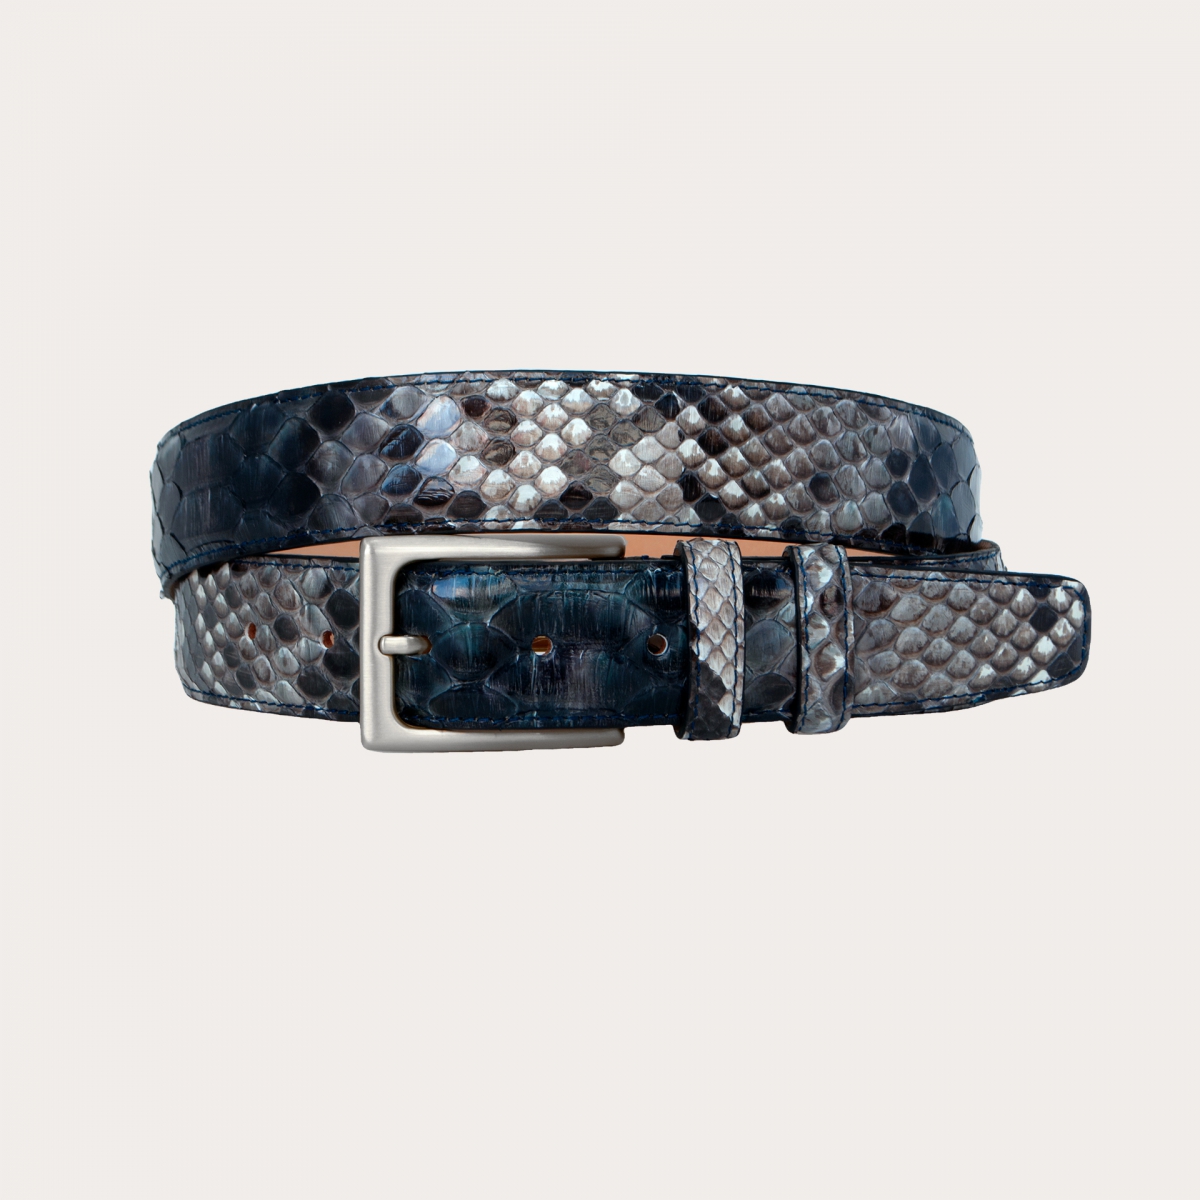 Cinturón de piel de pitón H35 tamponado a mano con hebilla de satén plata, tonos azul y rock